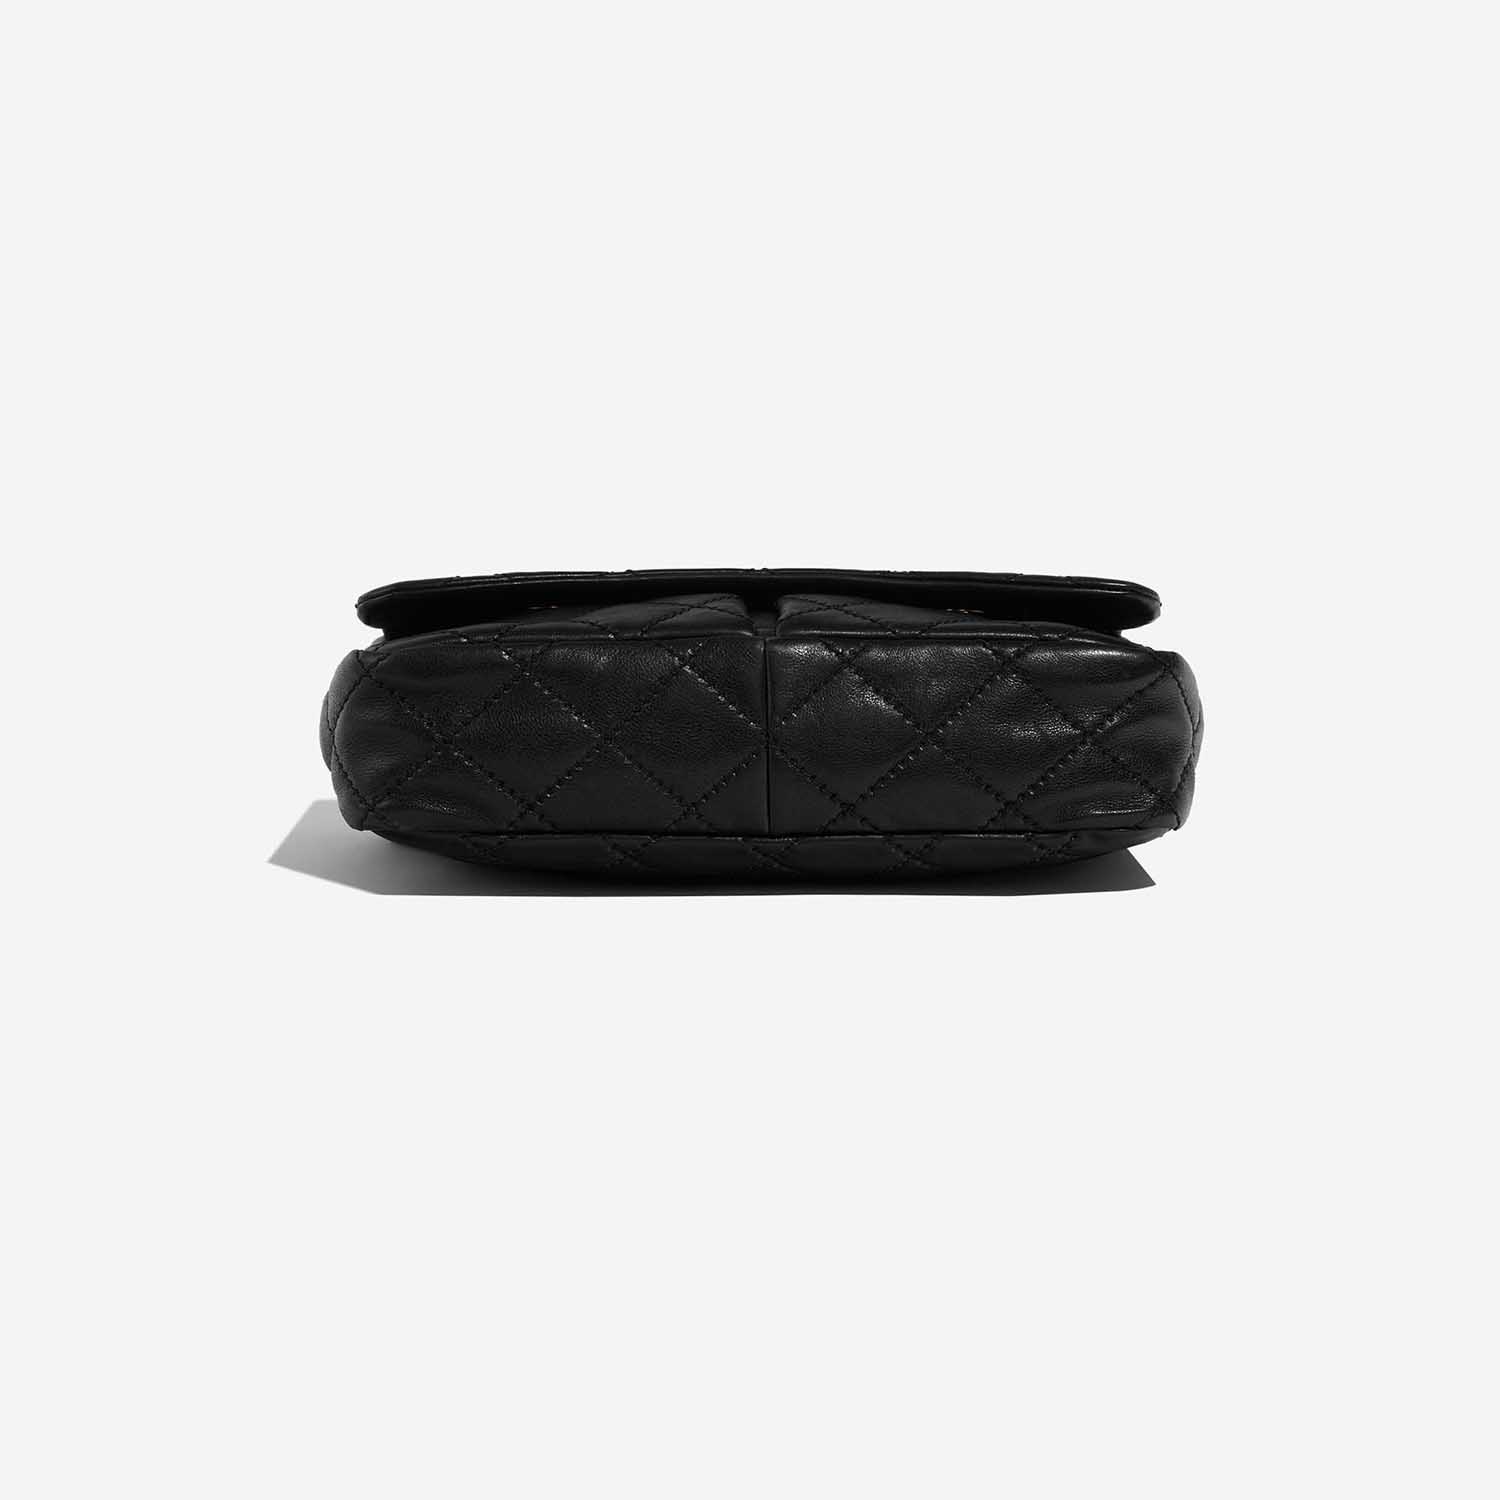 Chanel Timeless Jumbo Black Bottom | Verkaufen Sie Ihre Designer-Tasche auf Saclab.com